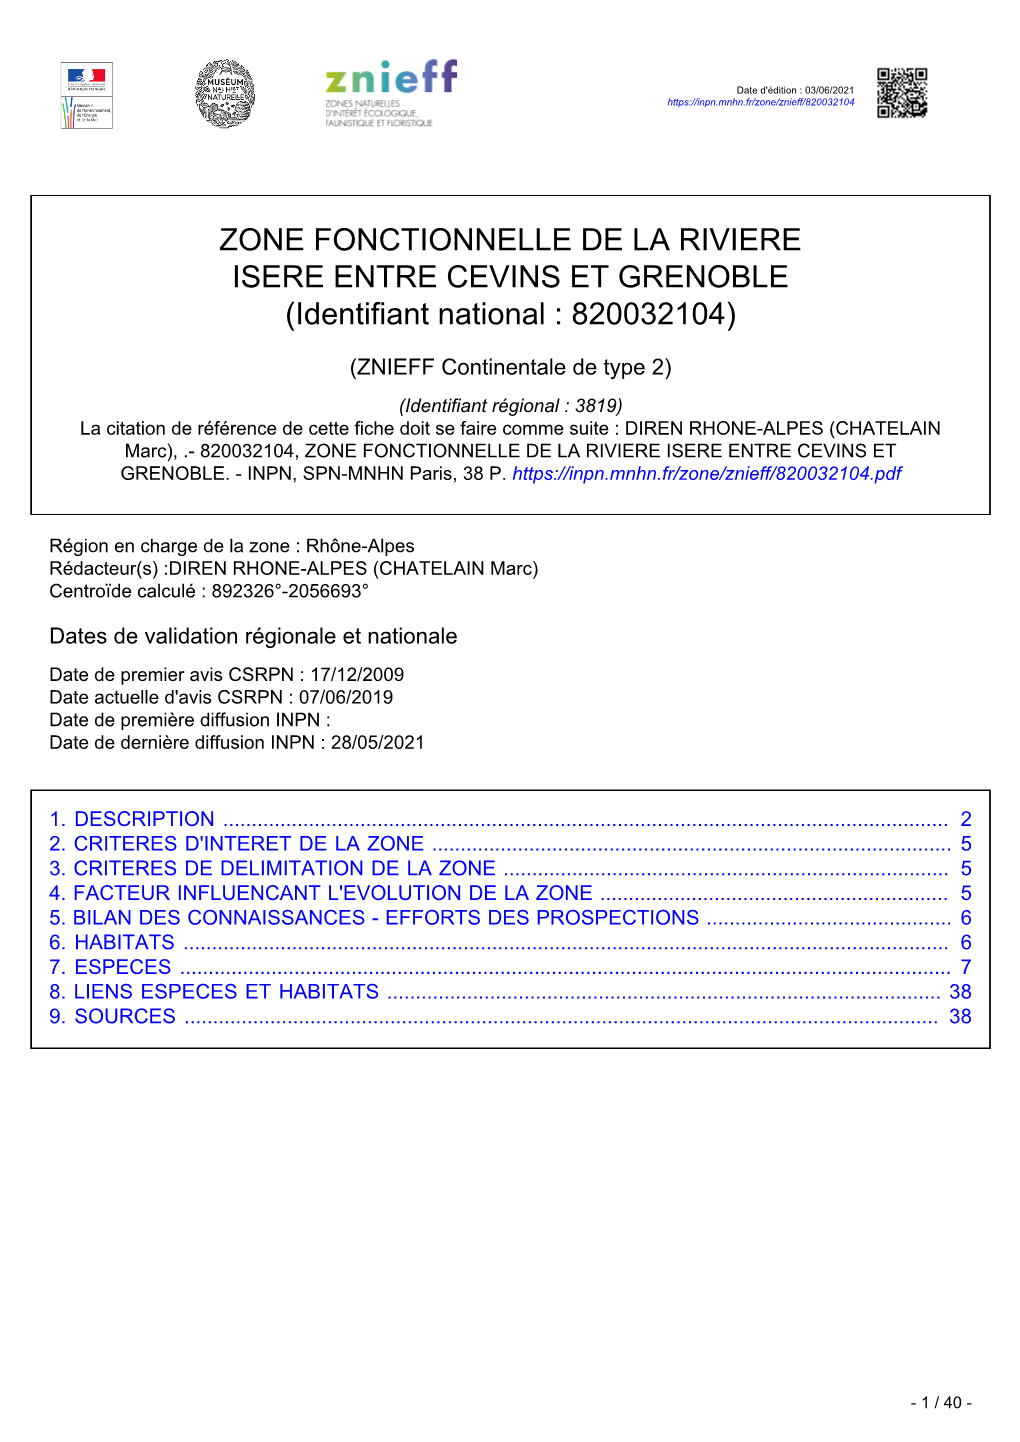 ZONE FONCTIONNELLE DE LA RIVIERE ISERE ENTRE CEVINS ET GRENOBLE (Identifiant National : 820032104)